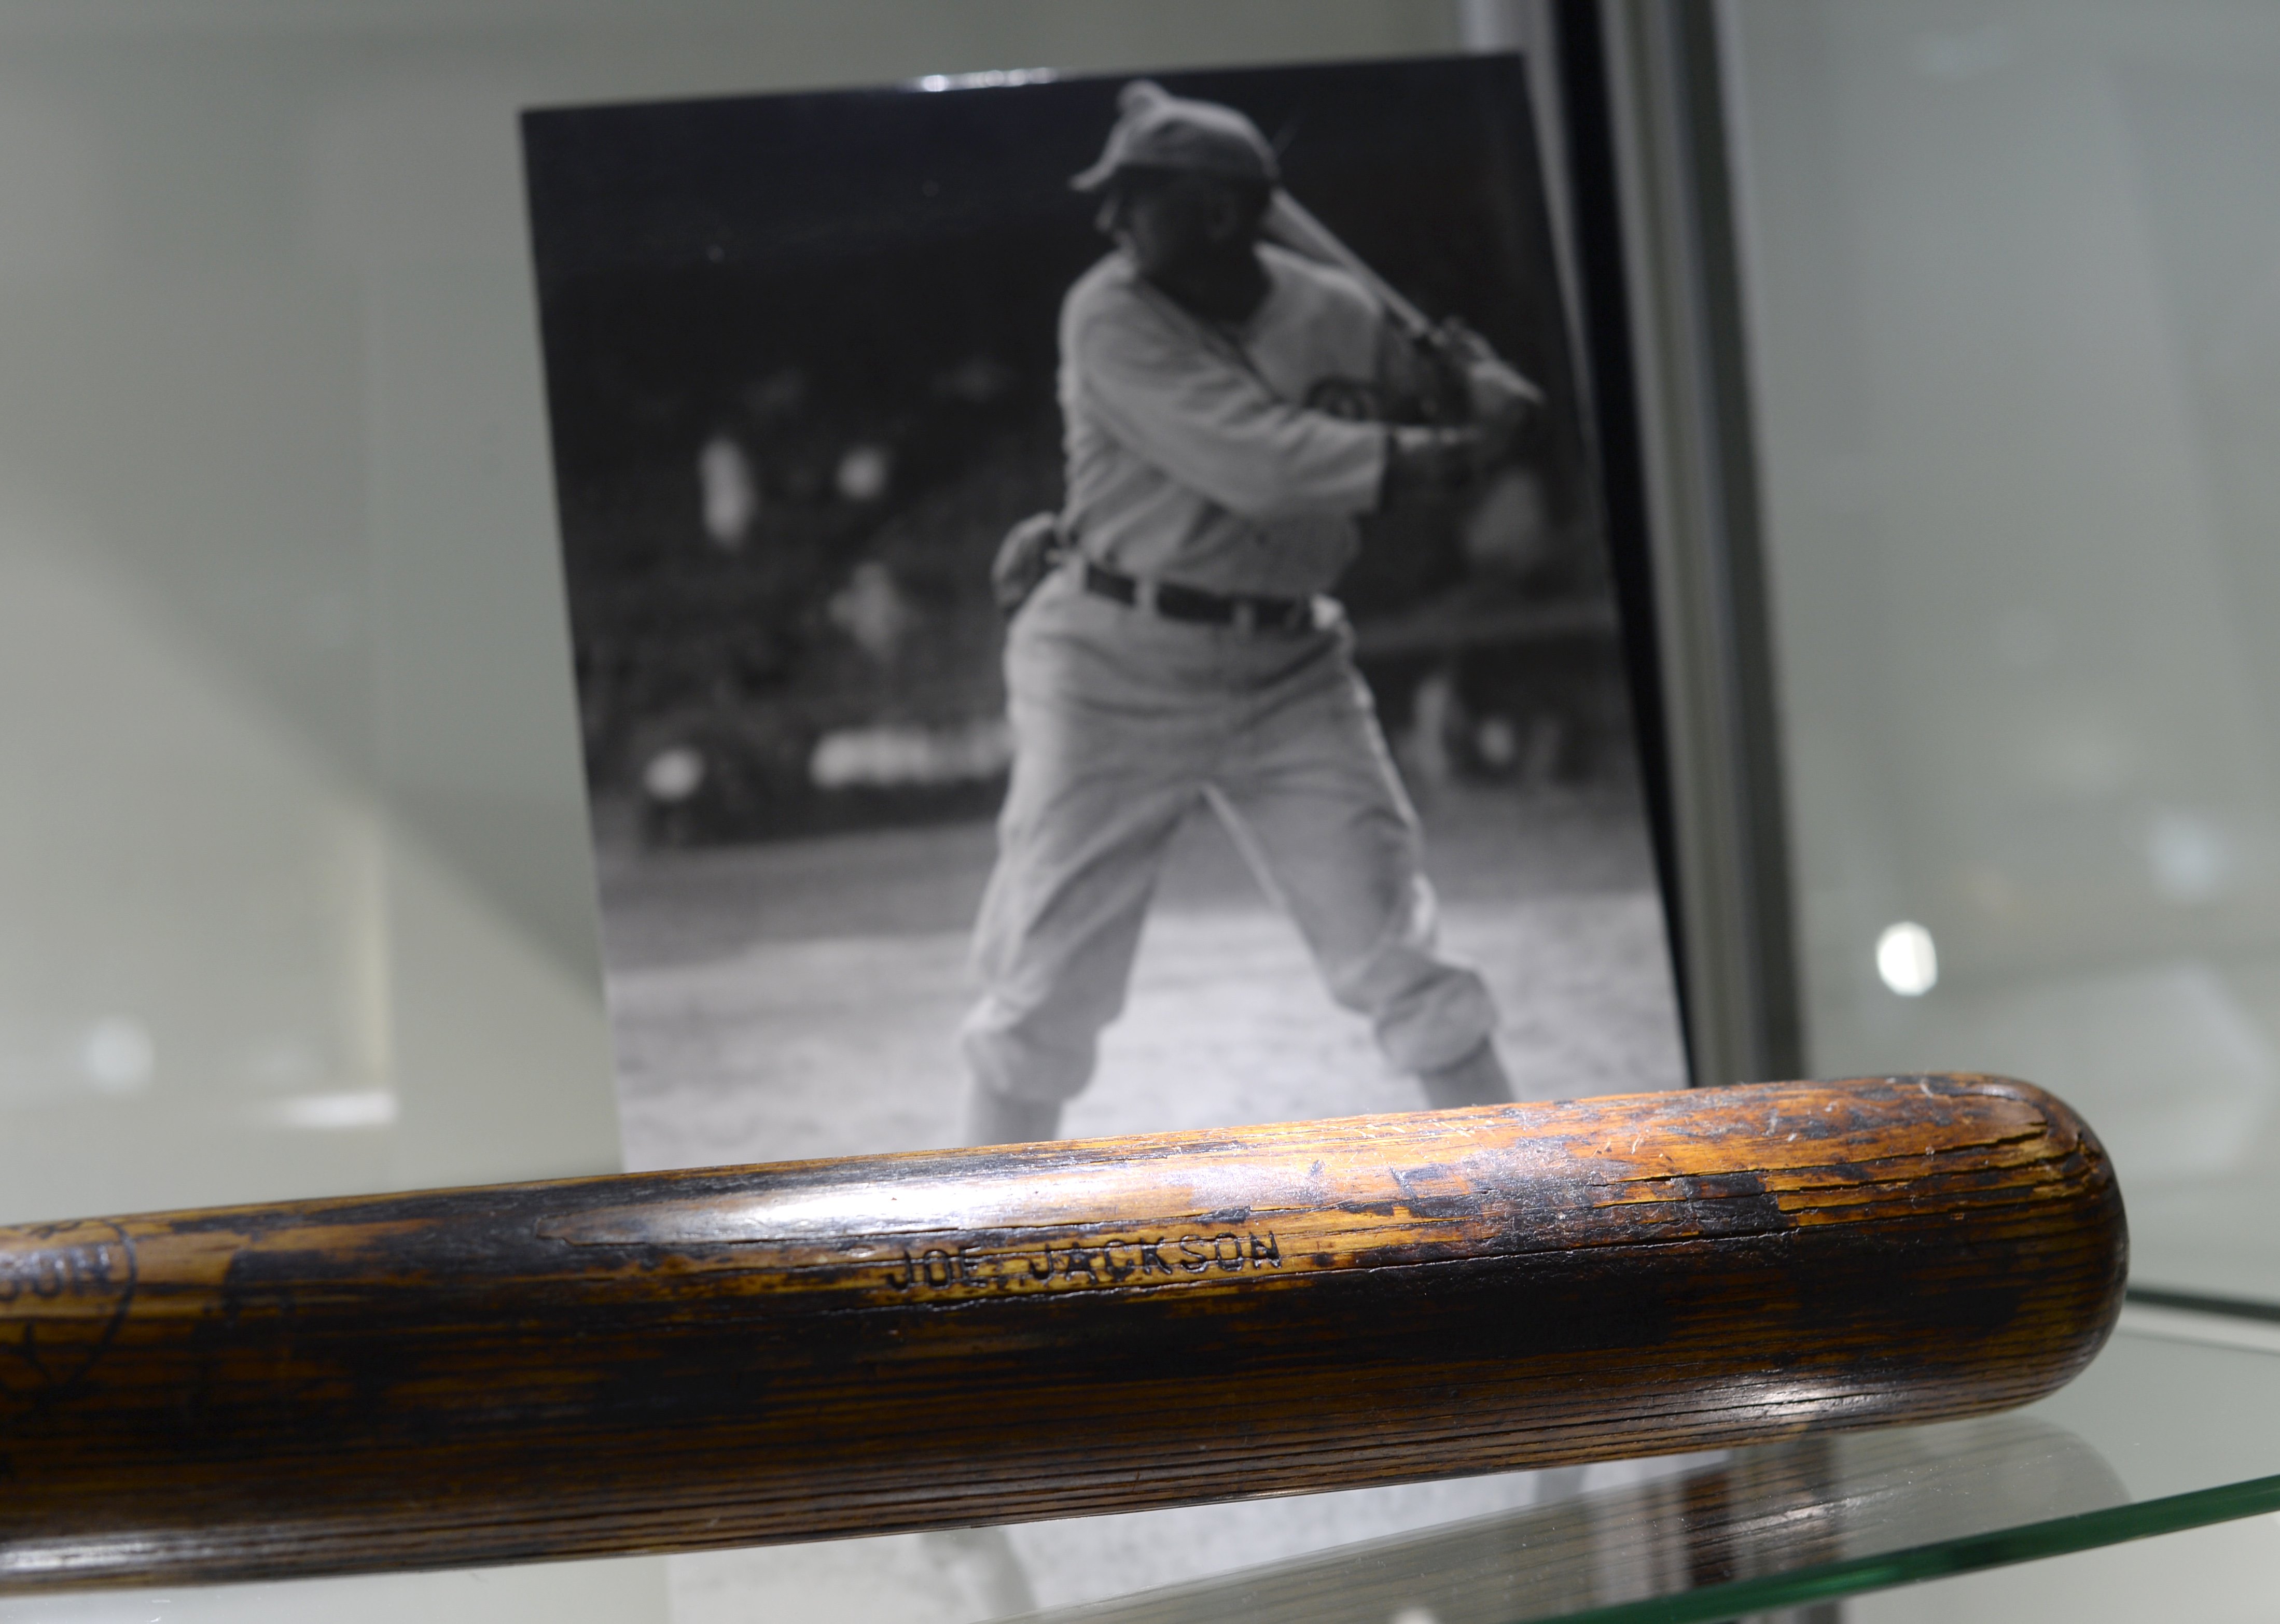 Banned by MLB, 'Shoeless Joe' Jackson has Hall of Fame-like